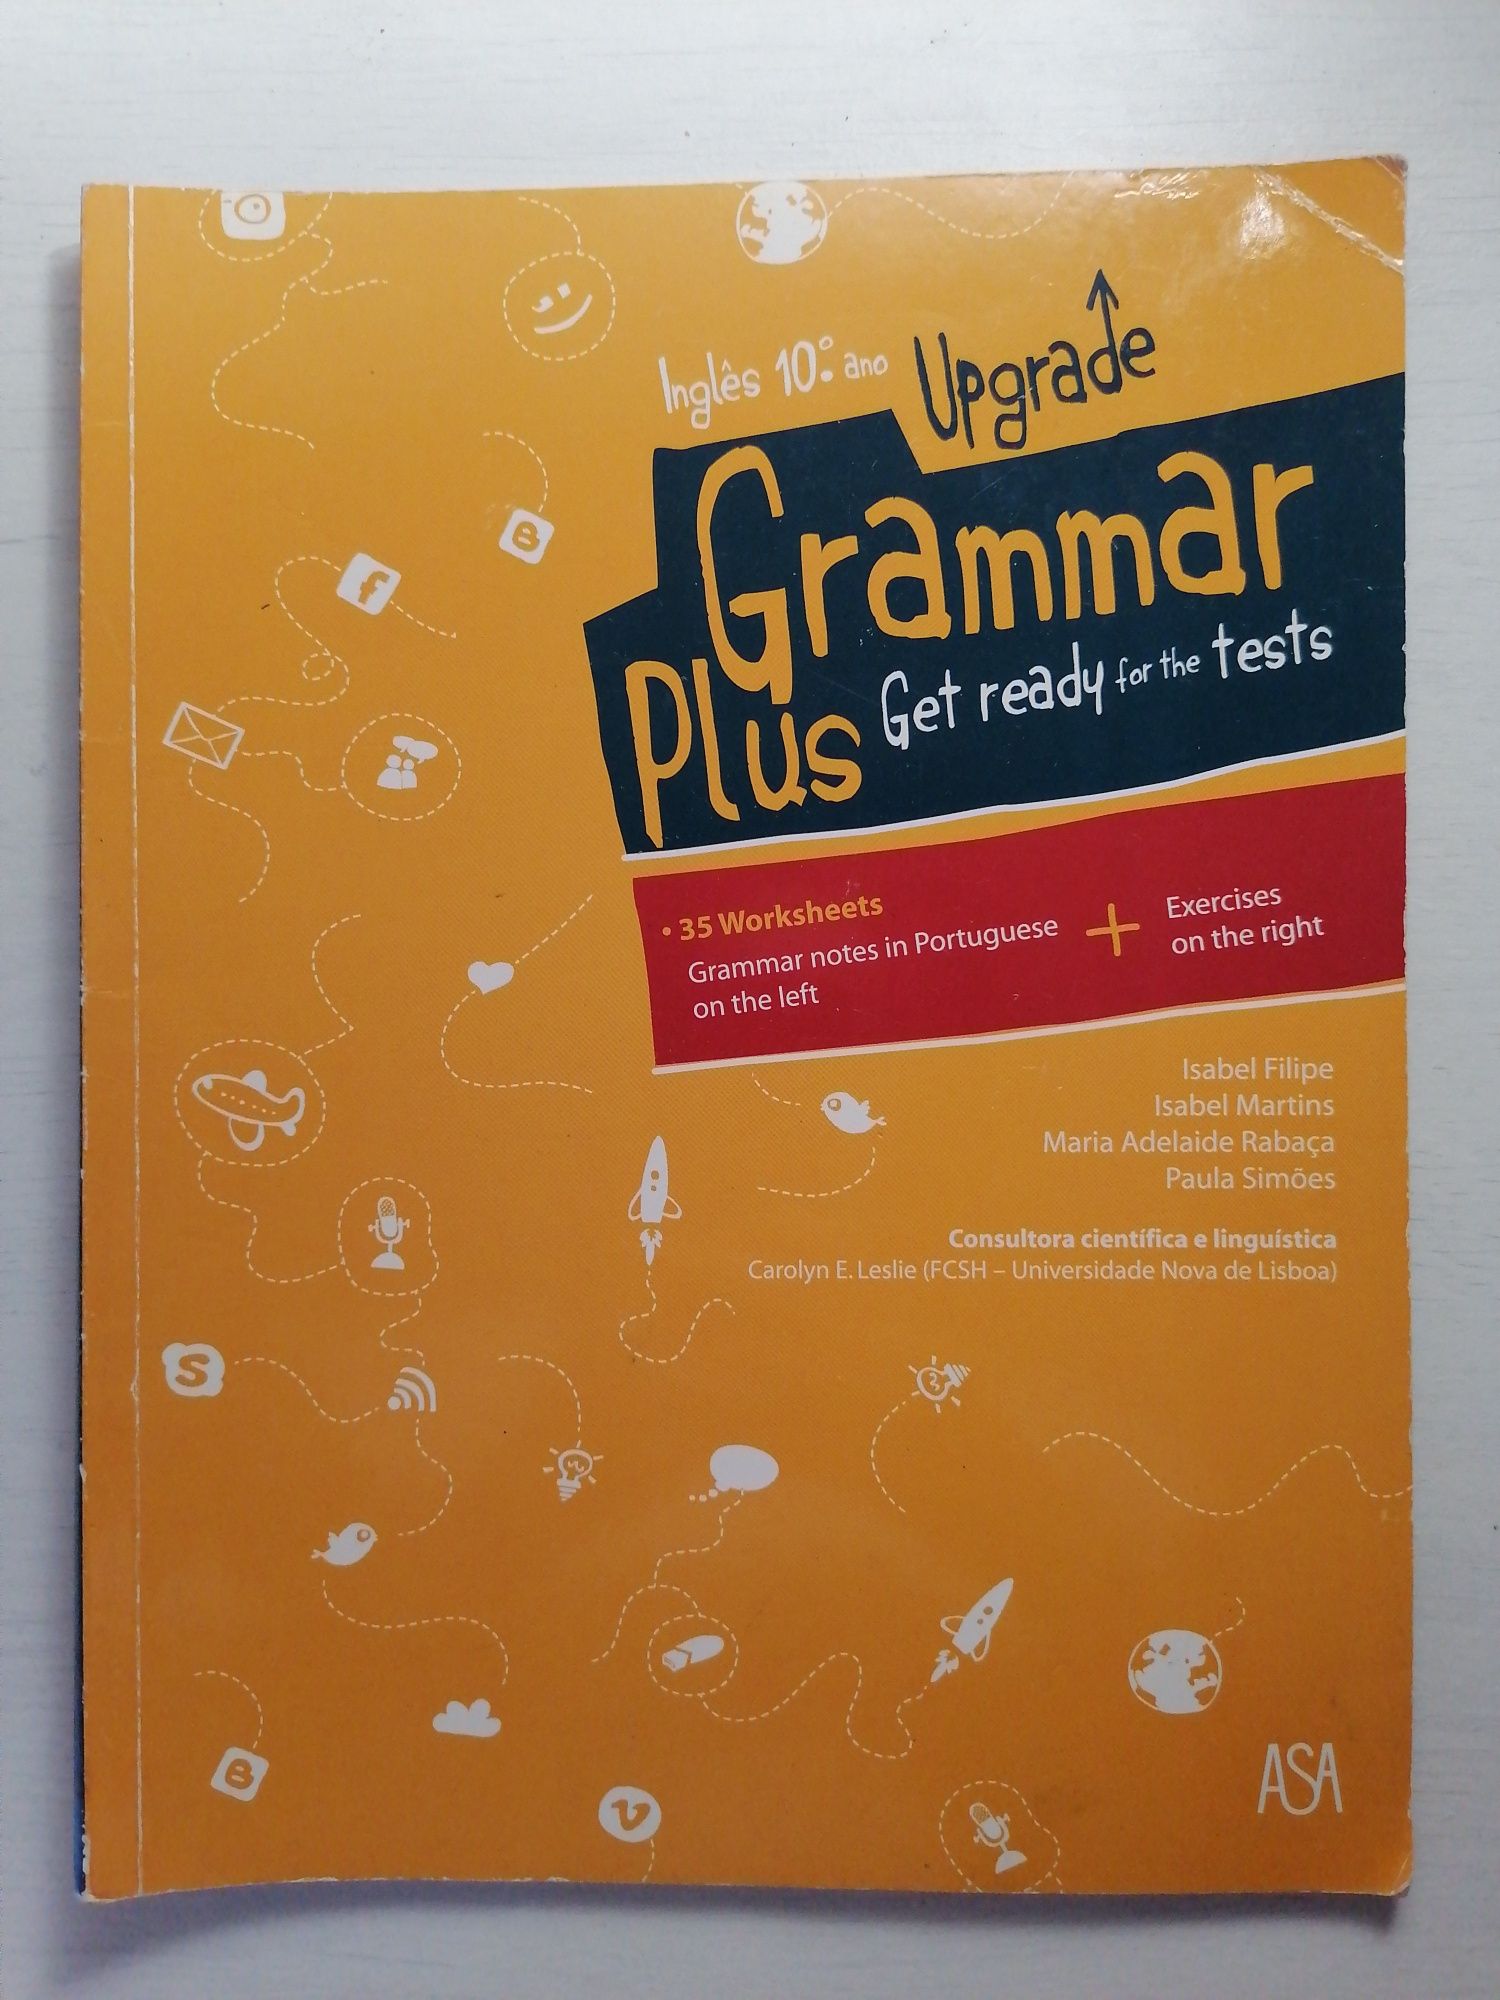 Caderno de Atividades Inglês 10° ano "Grammar Plus"